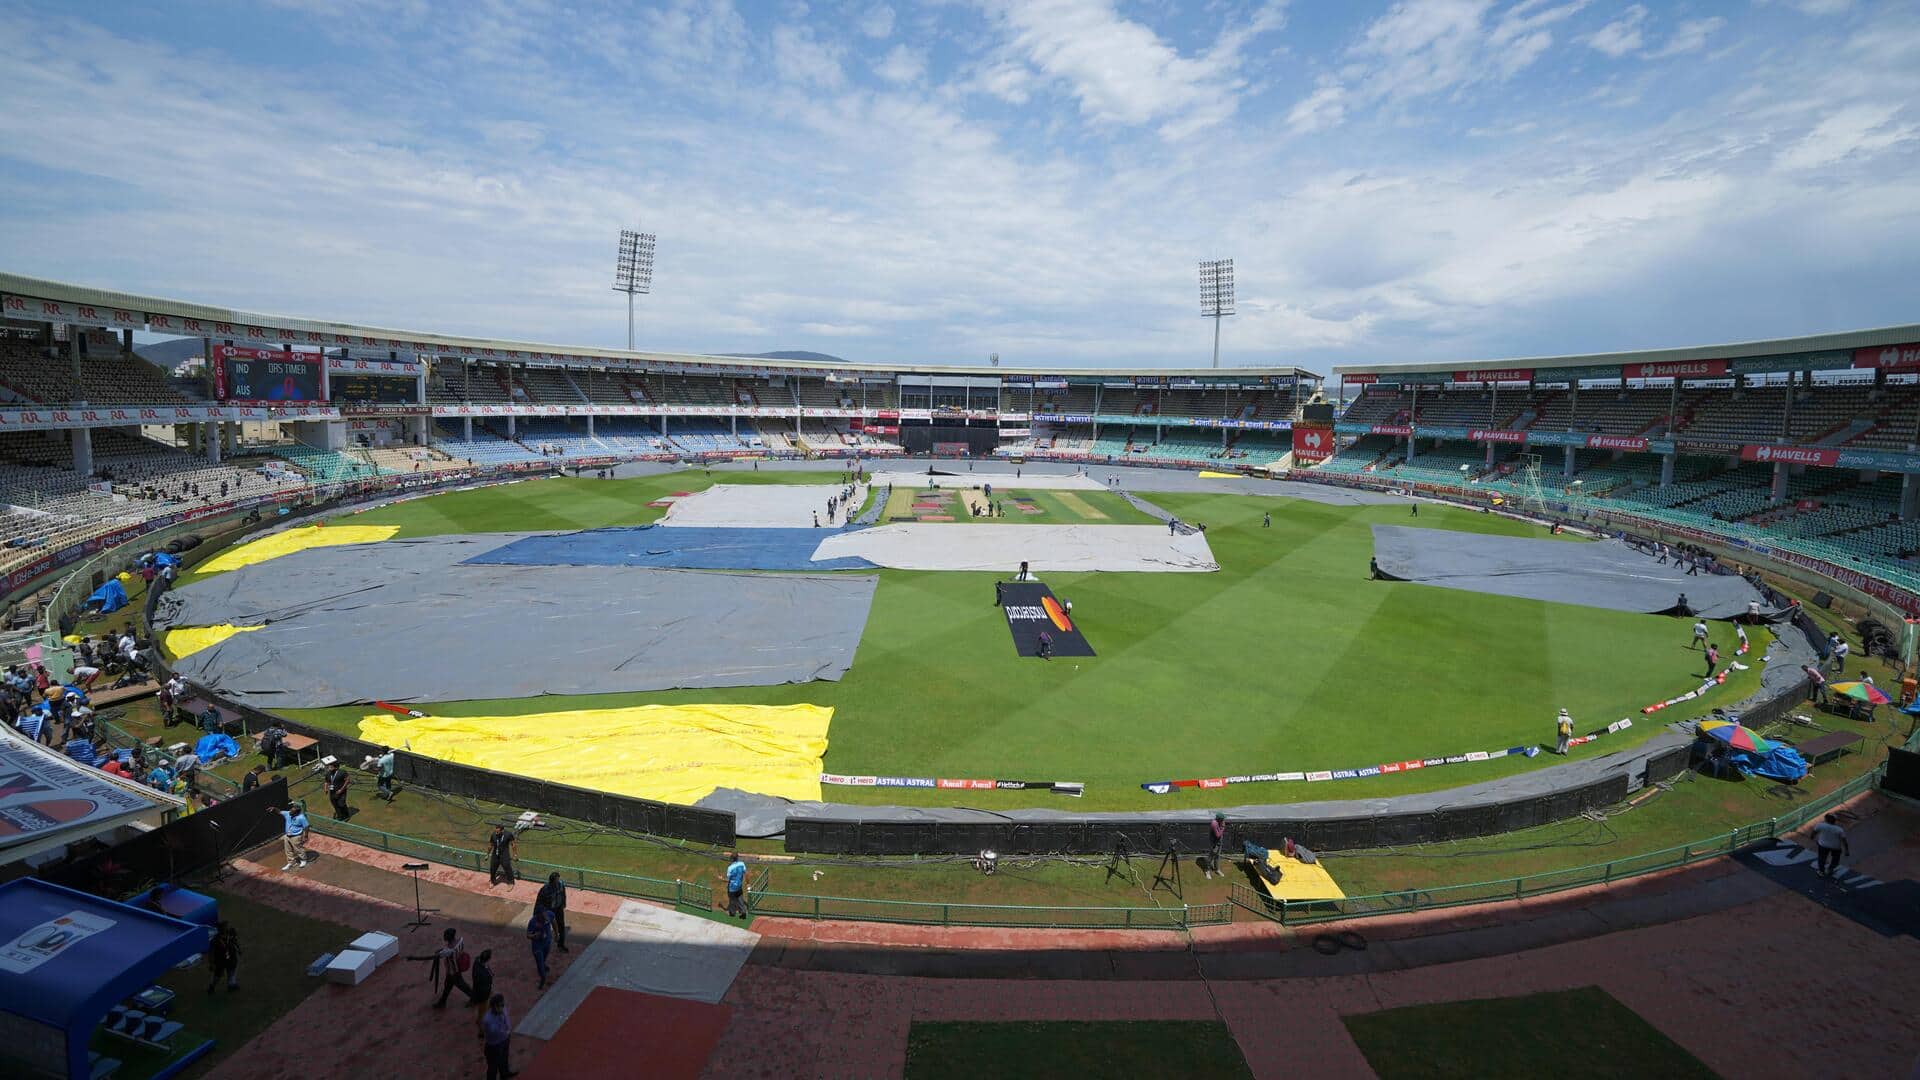  भारत बनाम इंग्लैंड: विशाखापट्टनम क्रिकेट स्टेडियम की पिच रिपोर्ट और अन्य आंकड़े